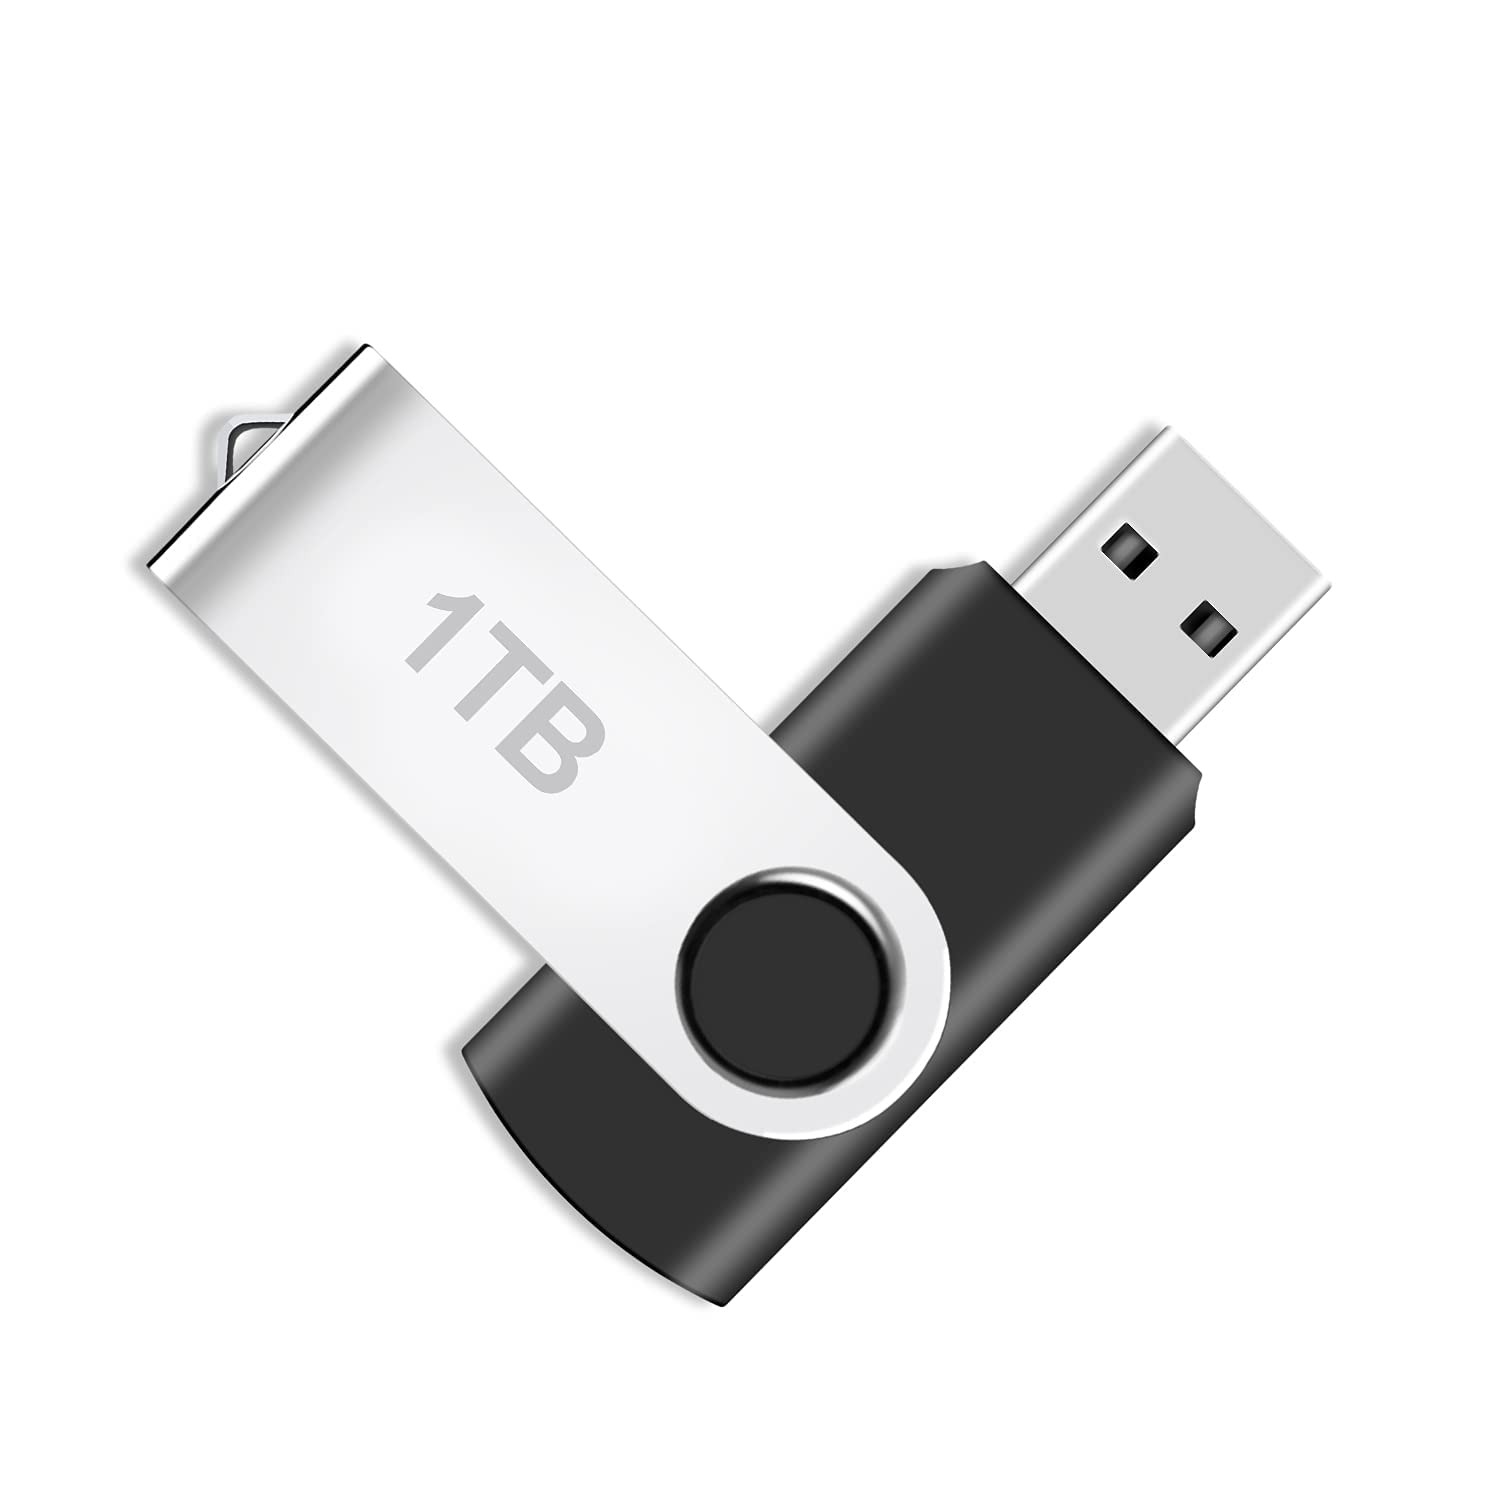 USB 3.0 Flash Drive 1TB, Portable Thumb Drives 1000GB: USB 3.0 Memory Stick, Ultra Large Storage USB 3.0 Drive, High-Speed 1TB Jump Drive, 1000GB Swivel Design Zip Drive for PC/Laptop